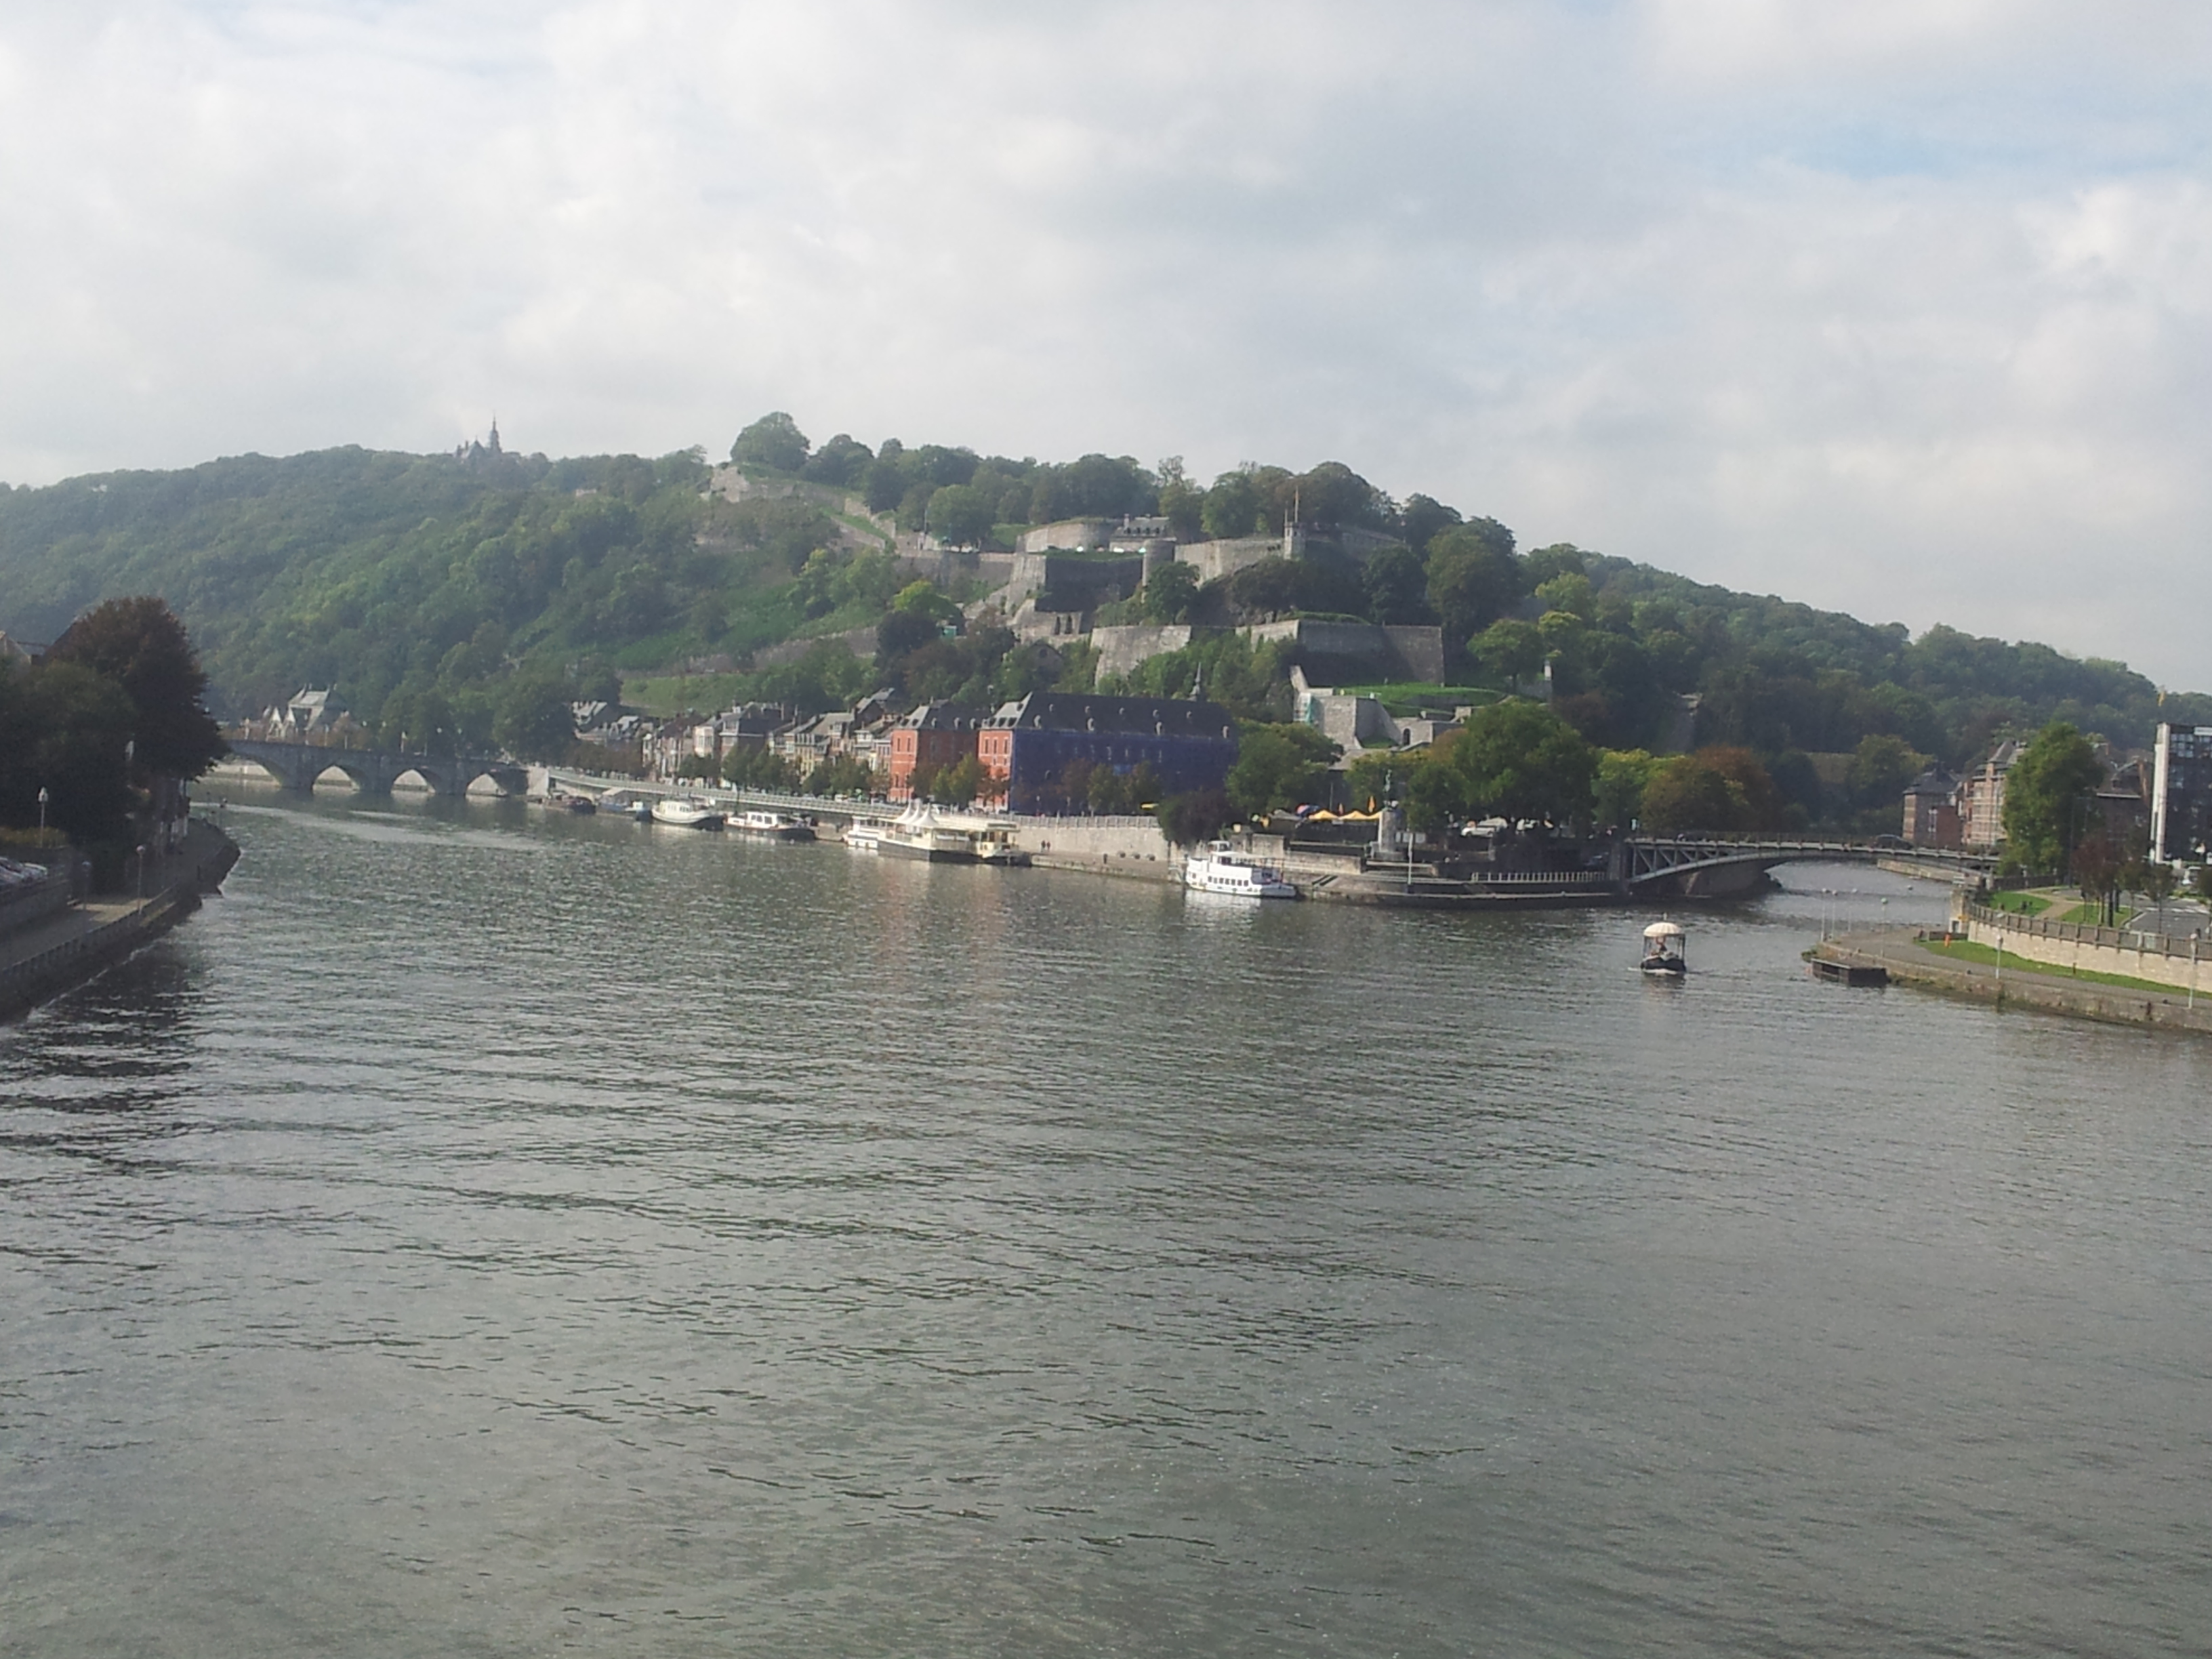 The citadelle of Namur